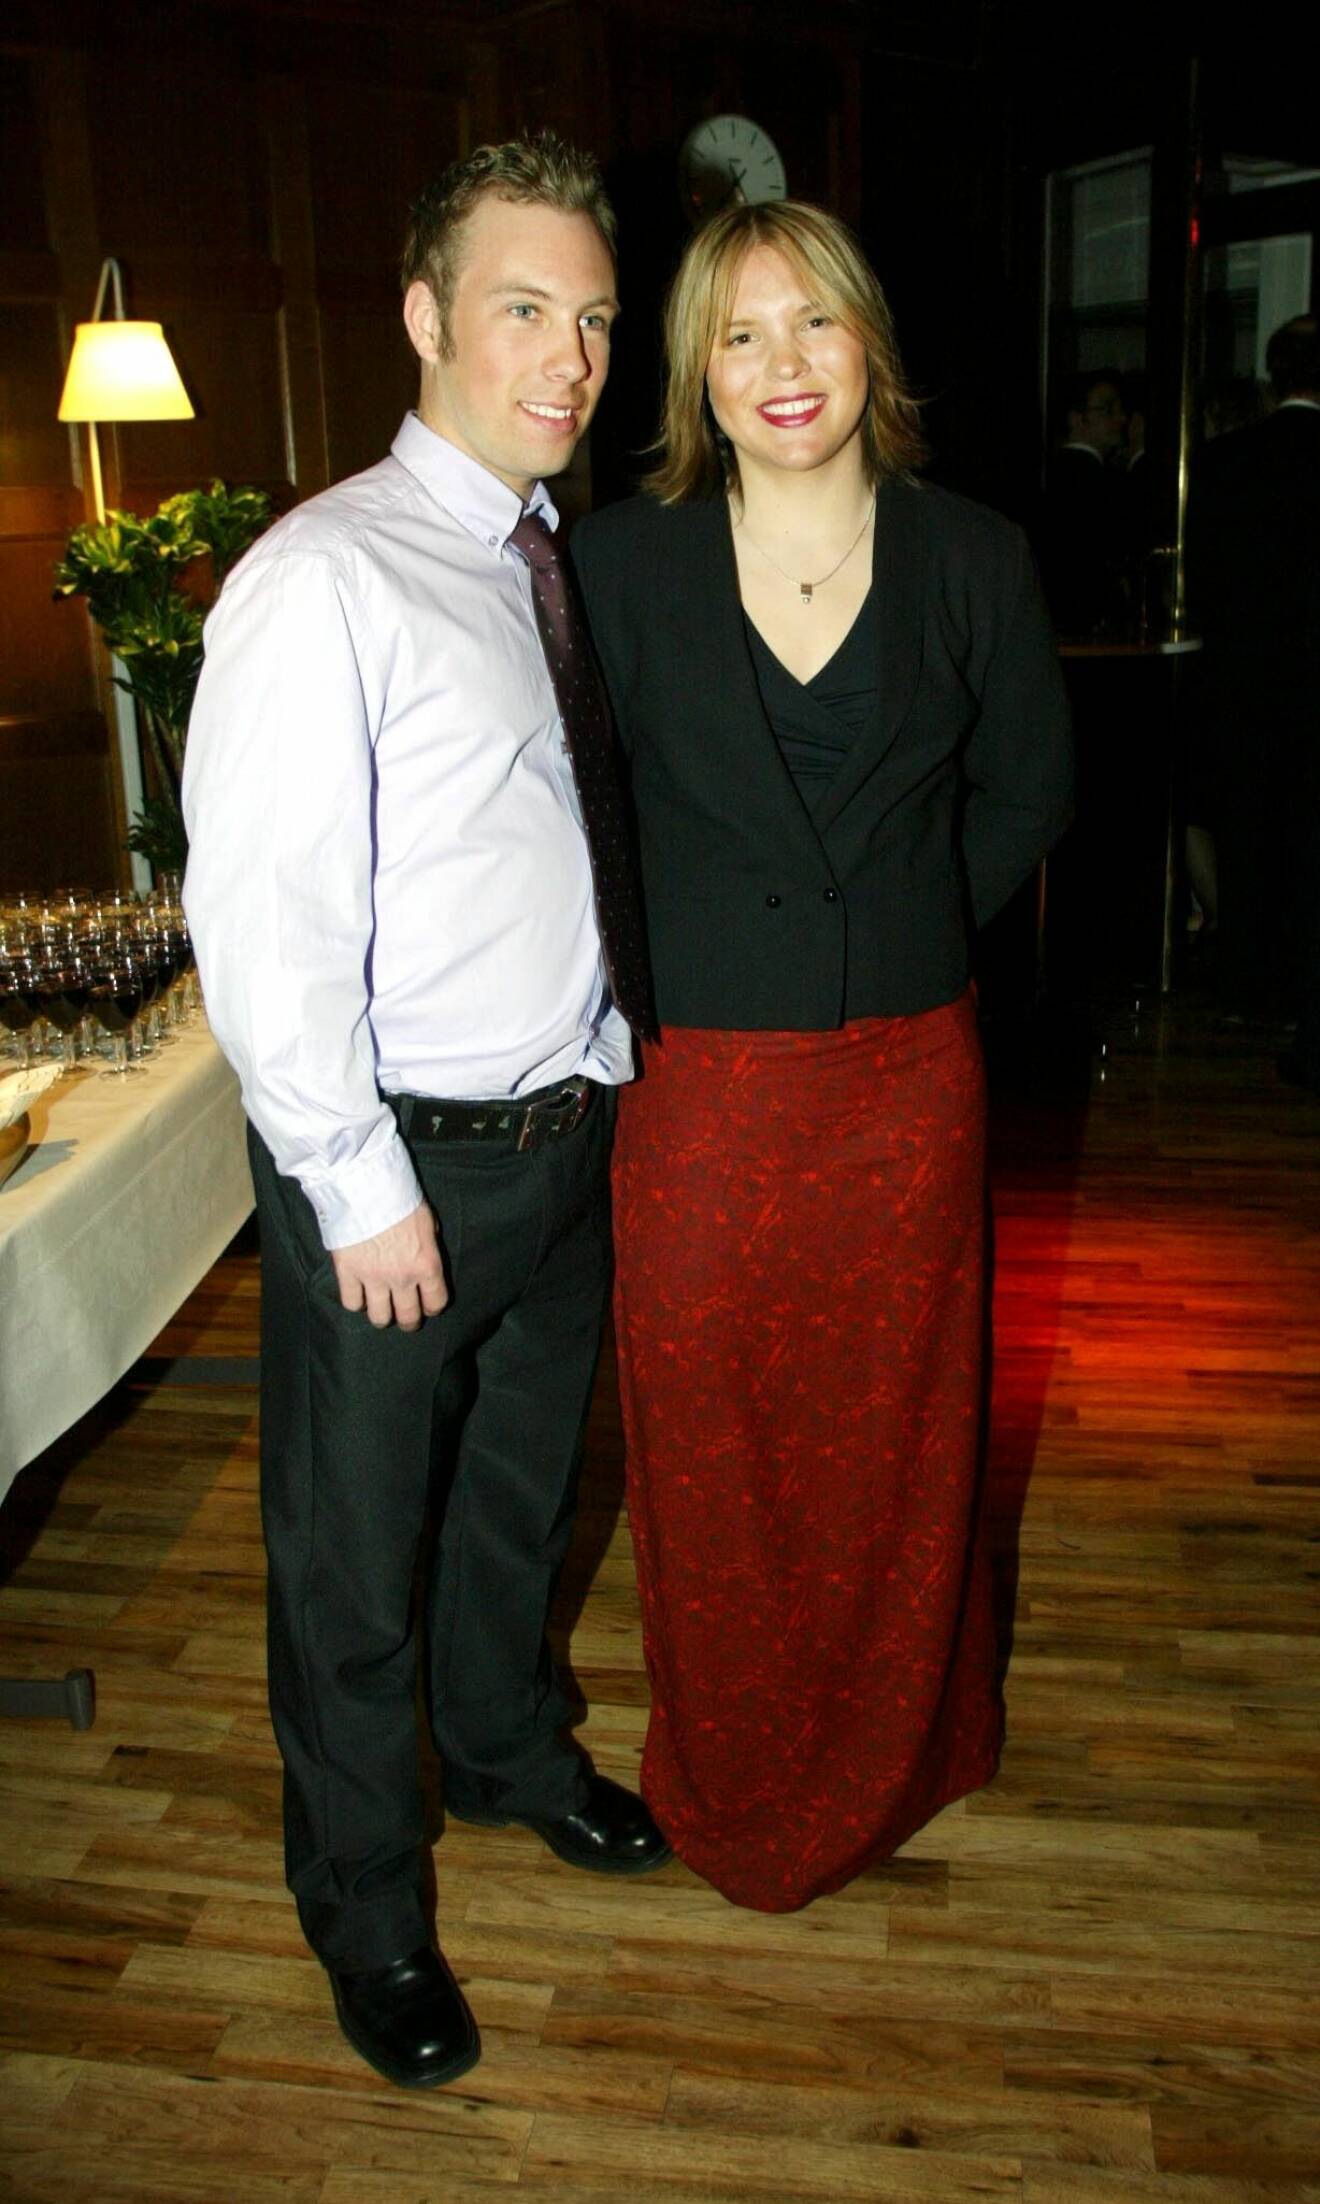 OS-medaljören Anja Pärson med pojkvän Björn Persson på den traditionsenliga OS-festen på Rosenbad i Stockholm år 2002.